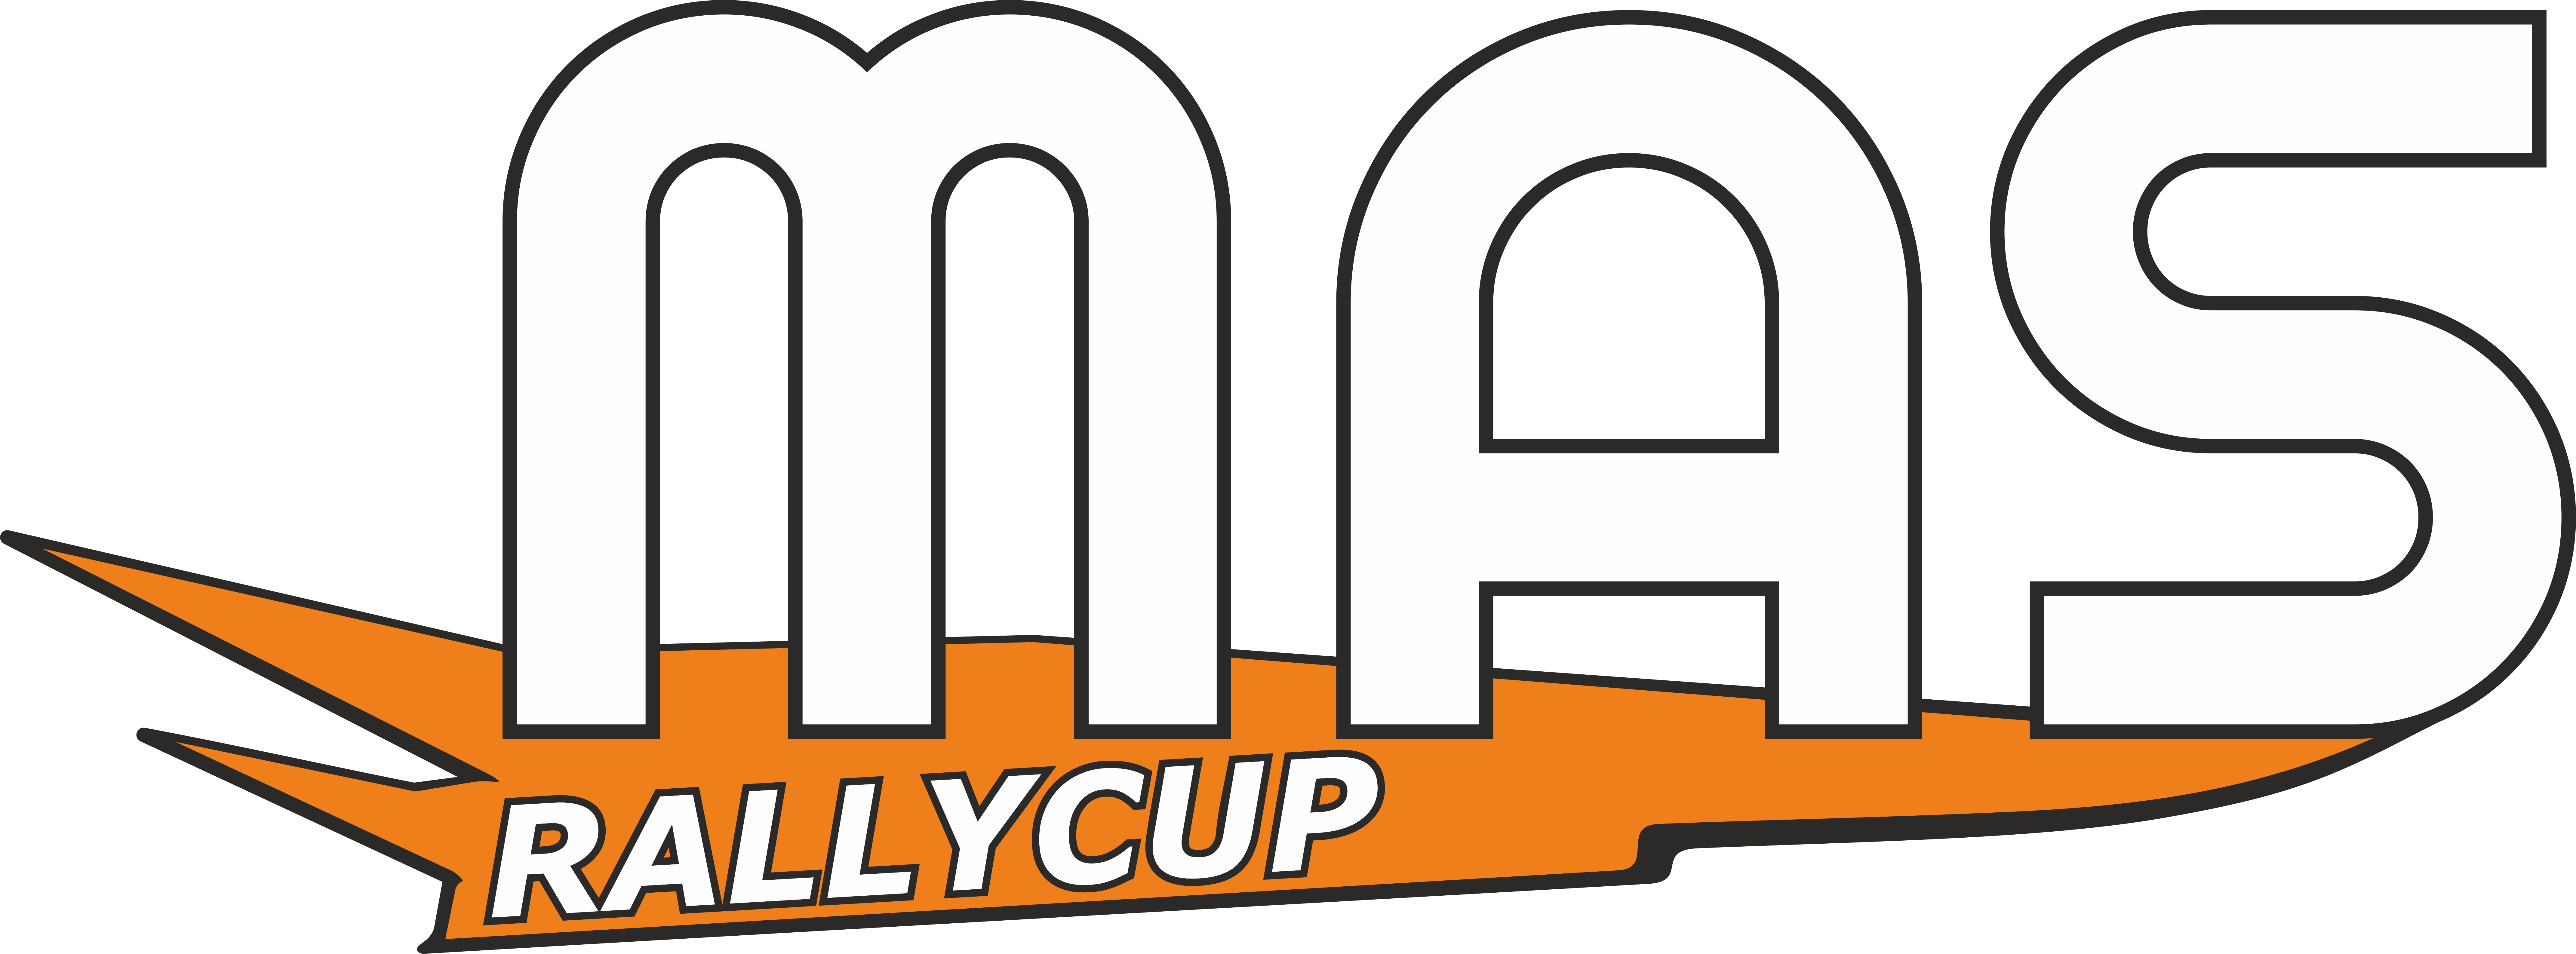 MAS Rallycup